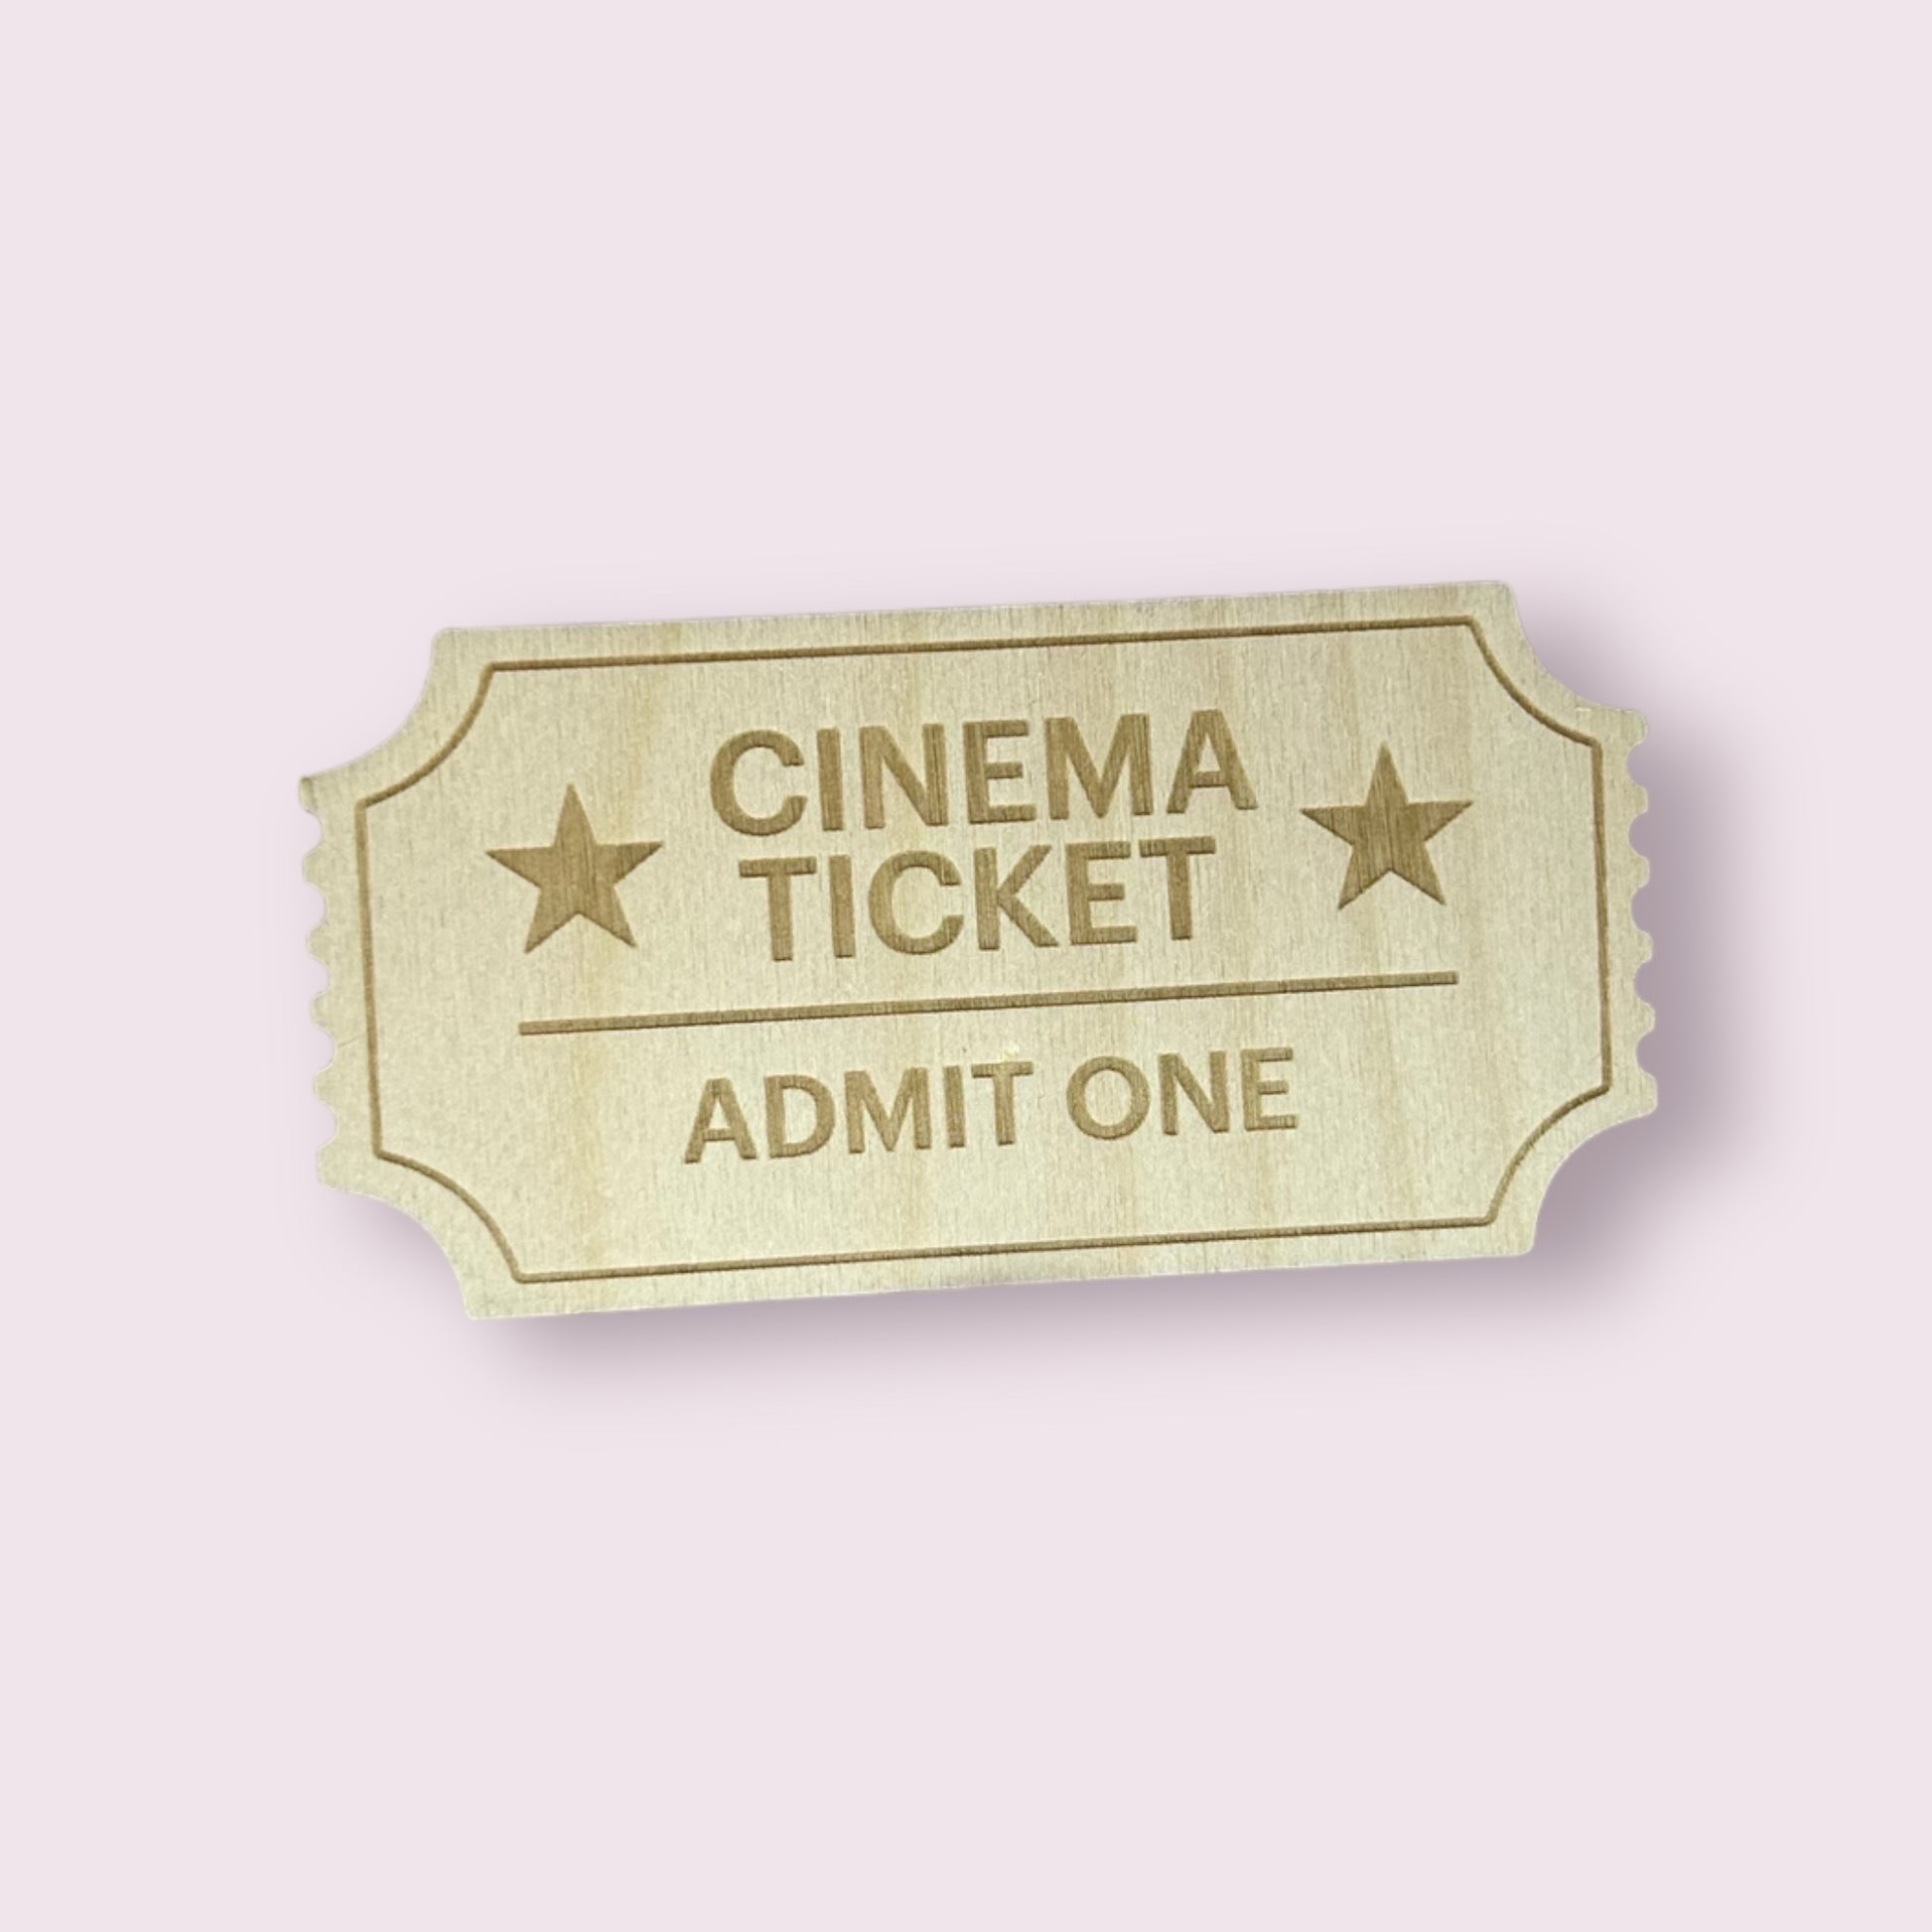 Toy Cinema Ticket | Home Movie Nights